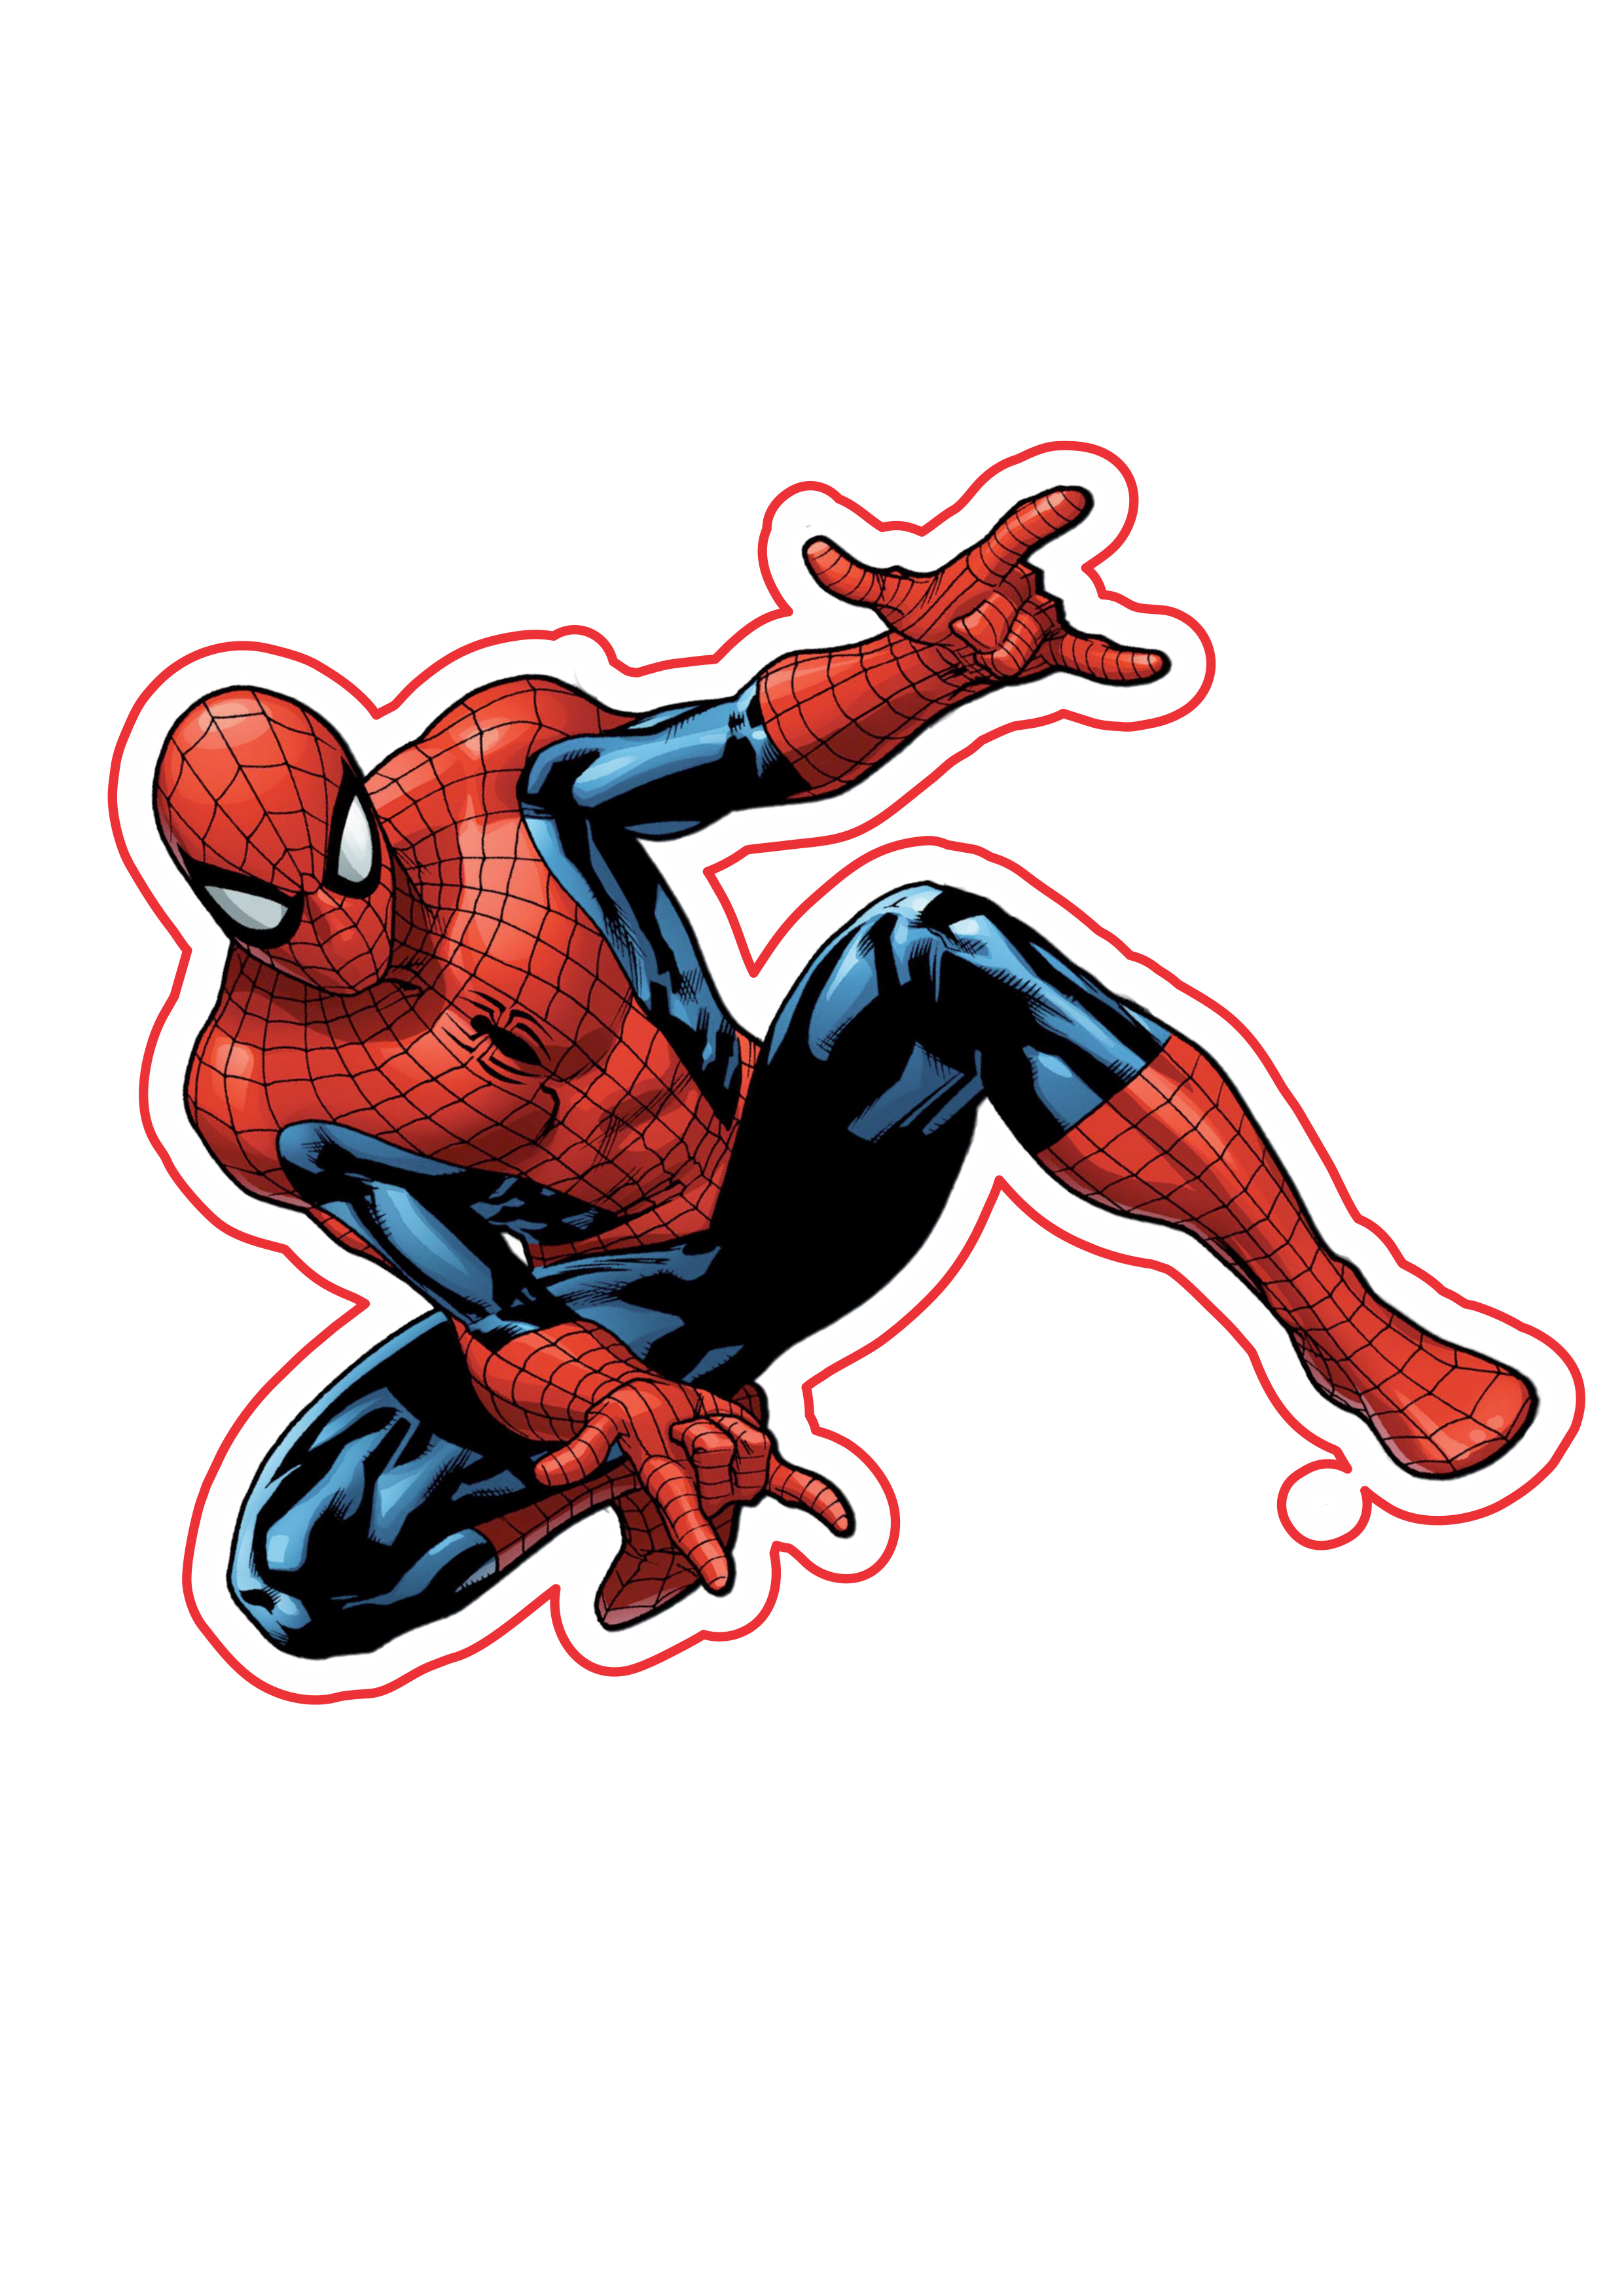 O espetacular Homem aranha imagem fundo transparente Marvel super heróis artes gráficas png